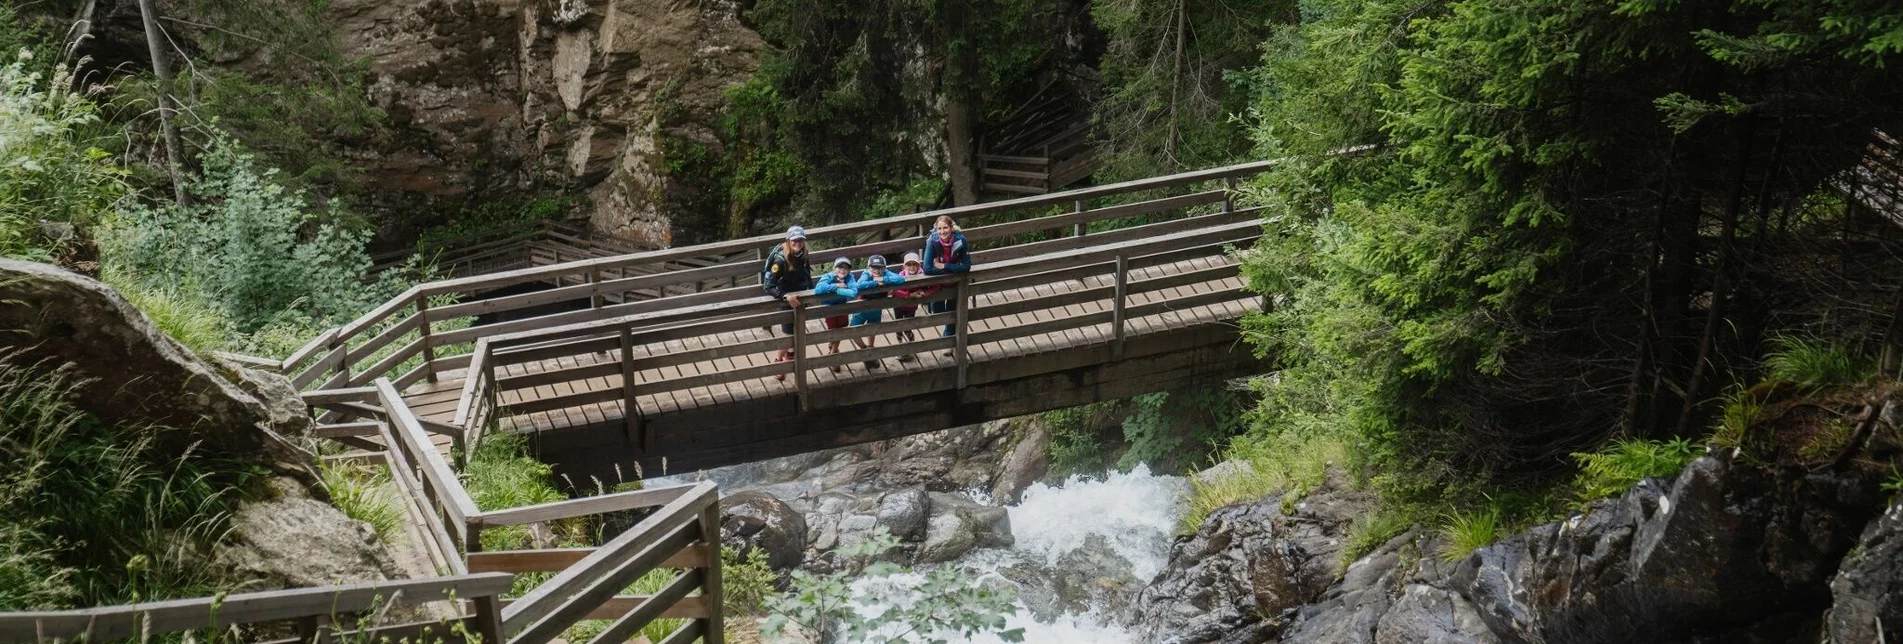 Themen- und Lehrpfad Kraftplatzwanderung 6: Günster Wasserfall - Touren-Impression #1 | © Tourismusverband Region Murau